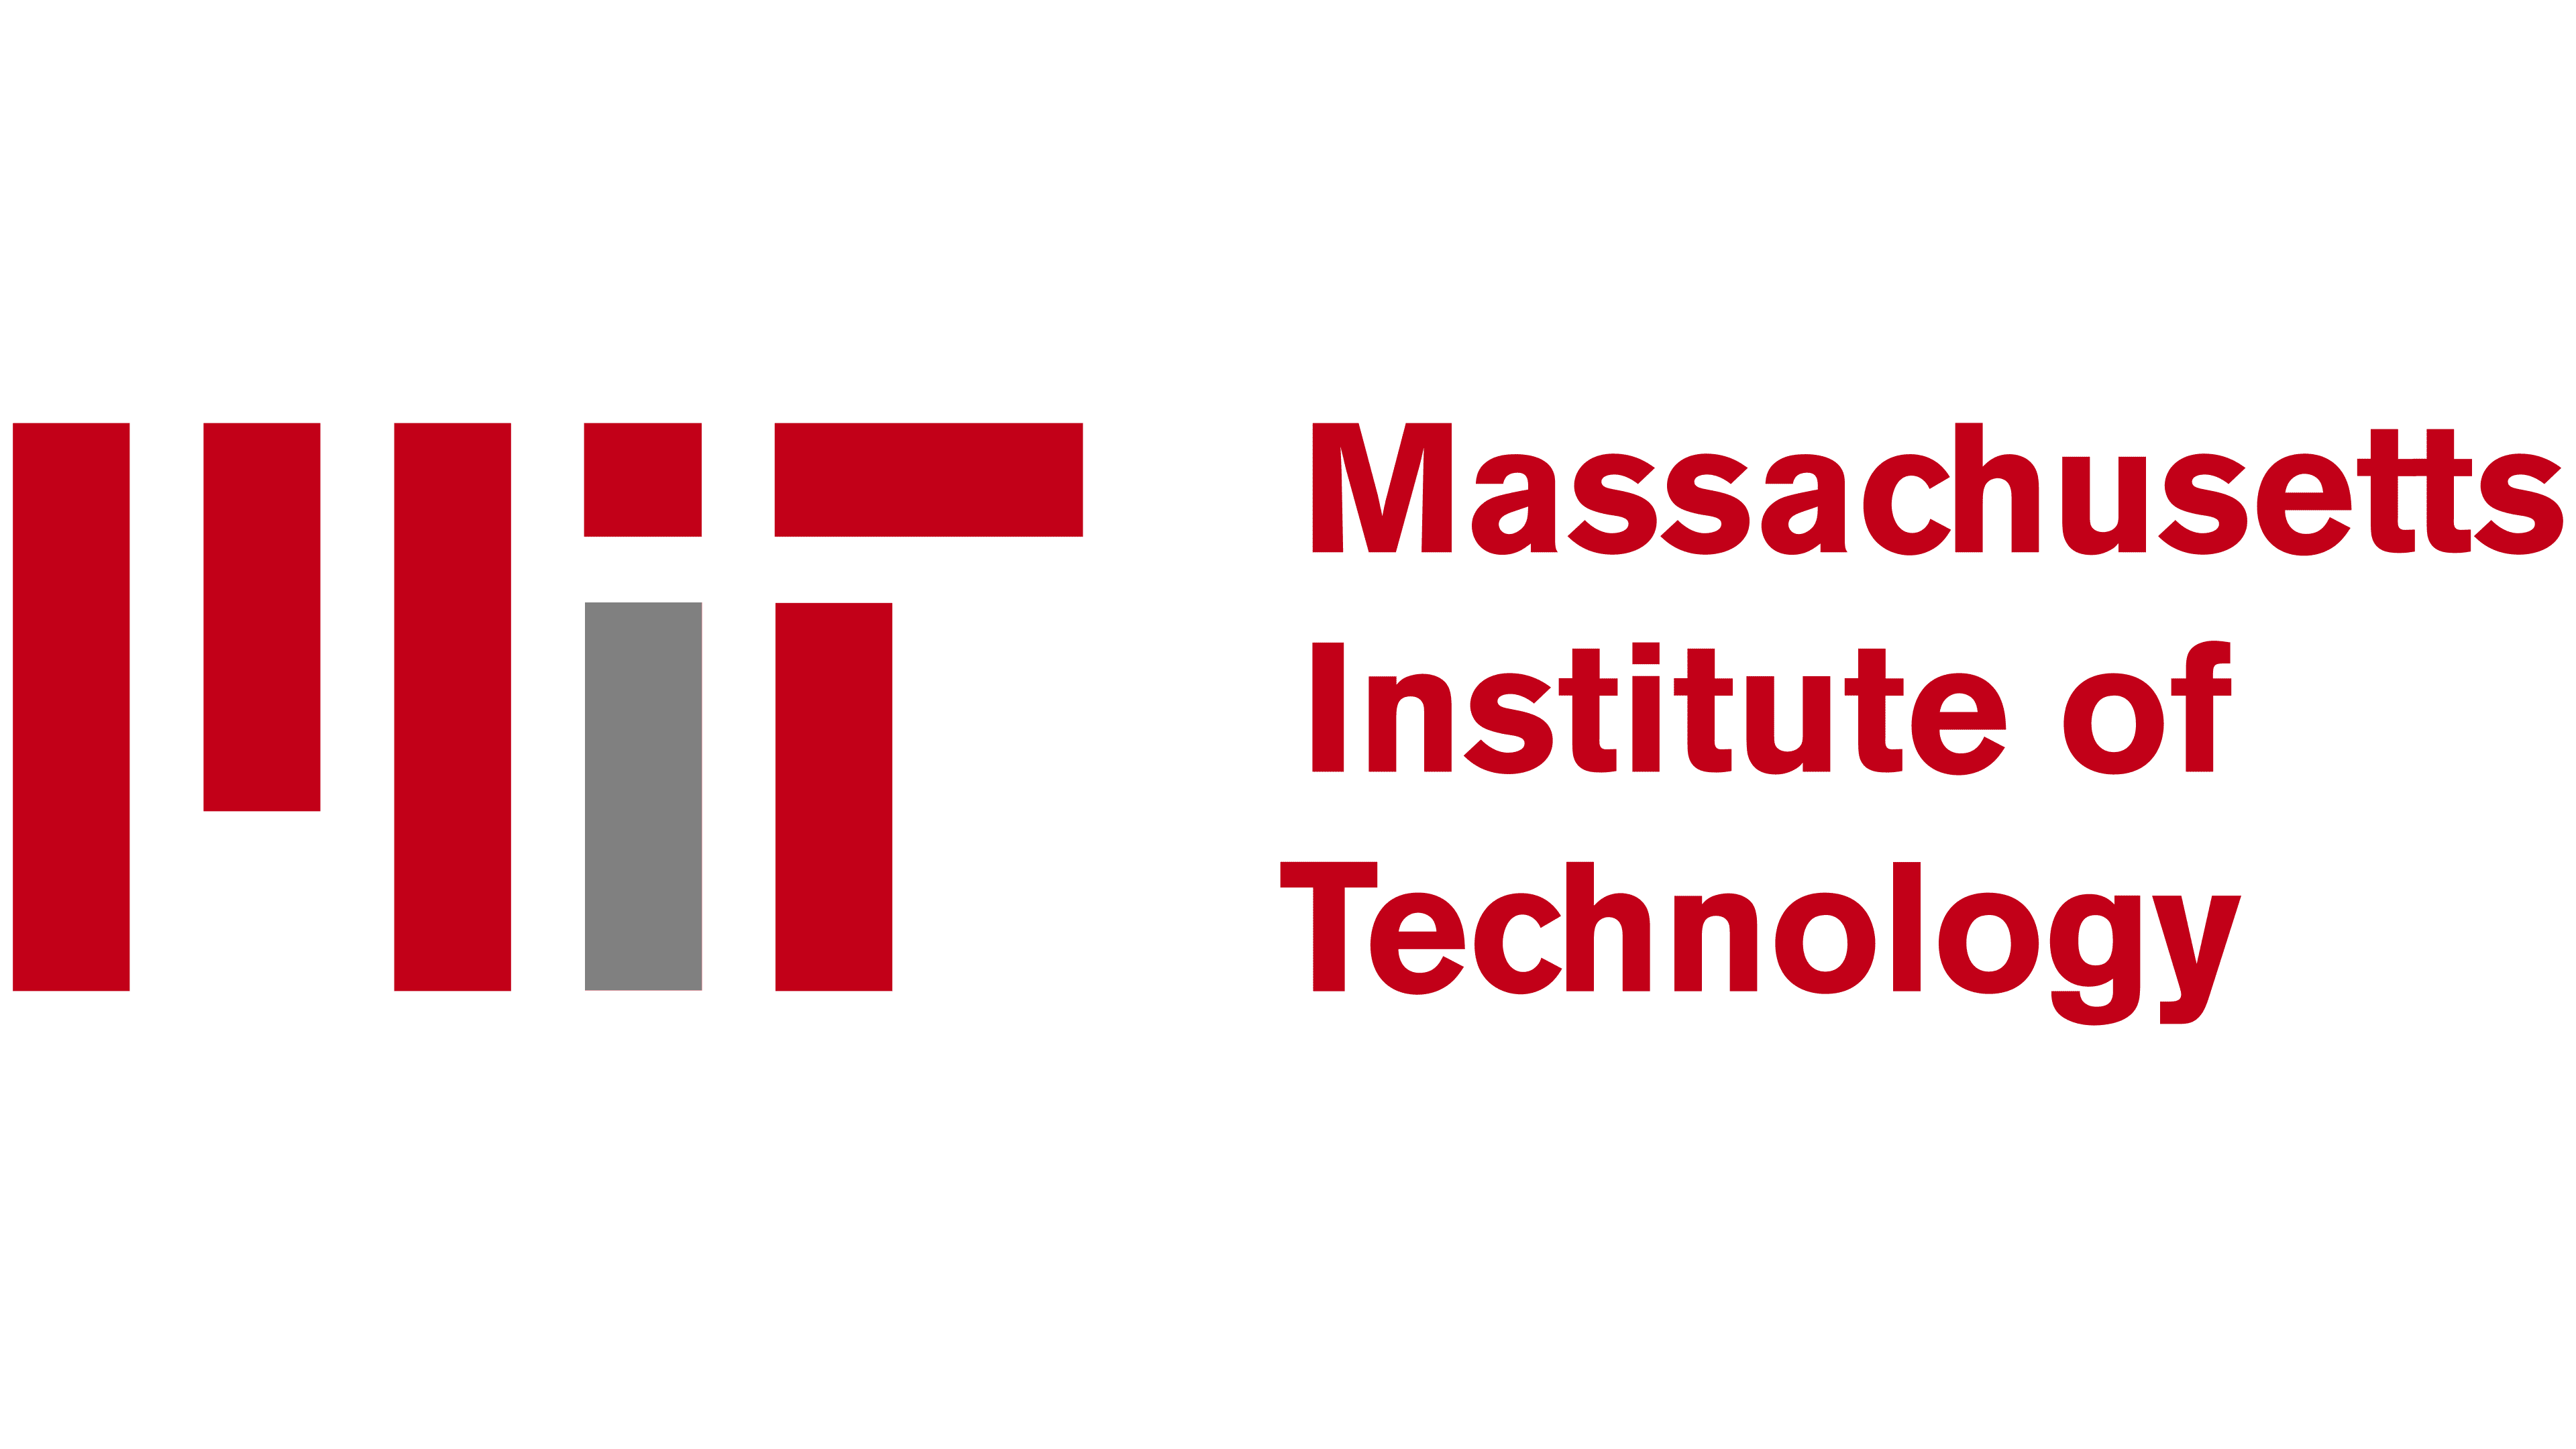 MIT Logo - Storia e significato dell'emblema del marchio